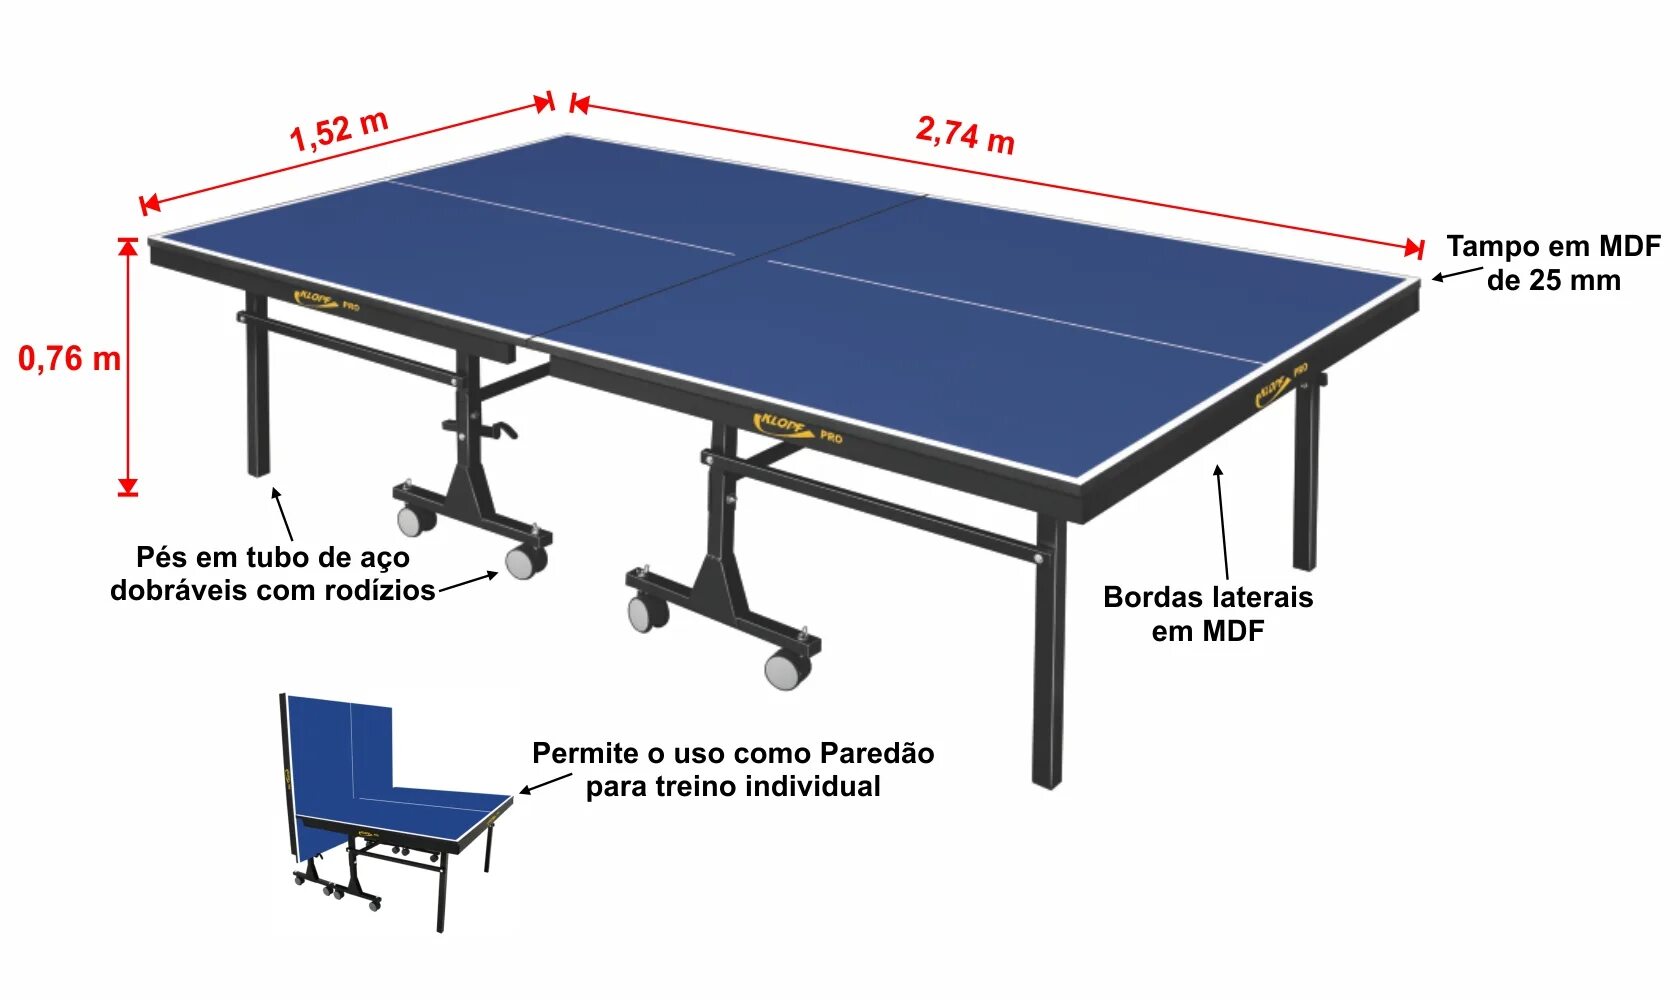 Высота теннисного стола для настольного тенниса. Размеры настольного теннисного стола стандарт. Габариты теннисного стола настольного тенниса. Параметры теннисного стола стандарт.